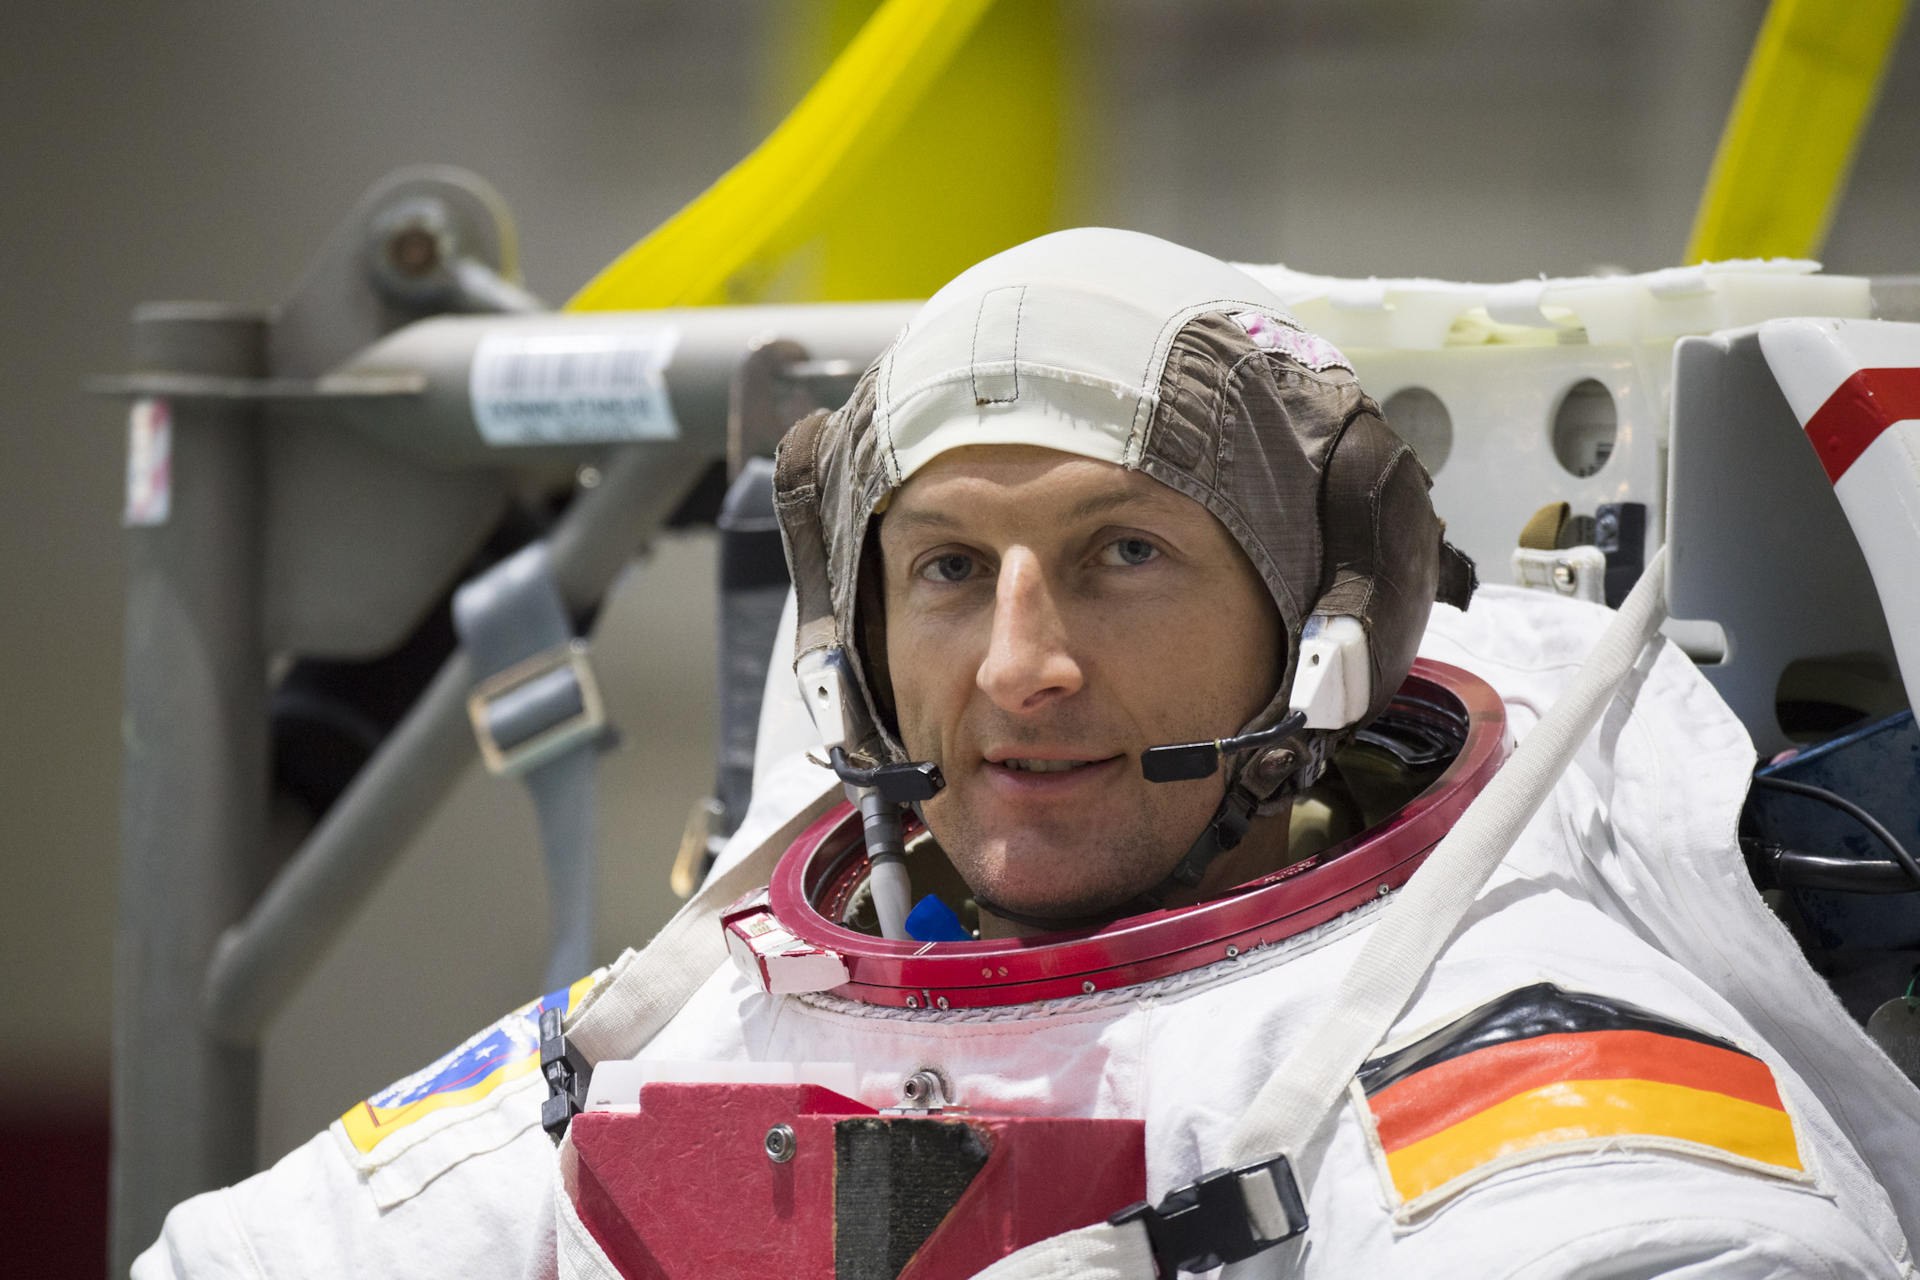 Matthias Maurer during his spacewalk training